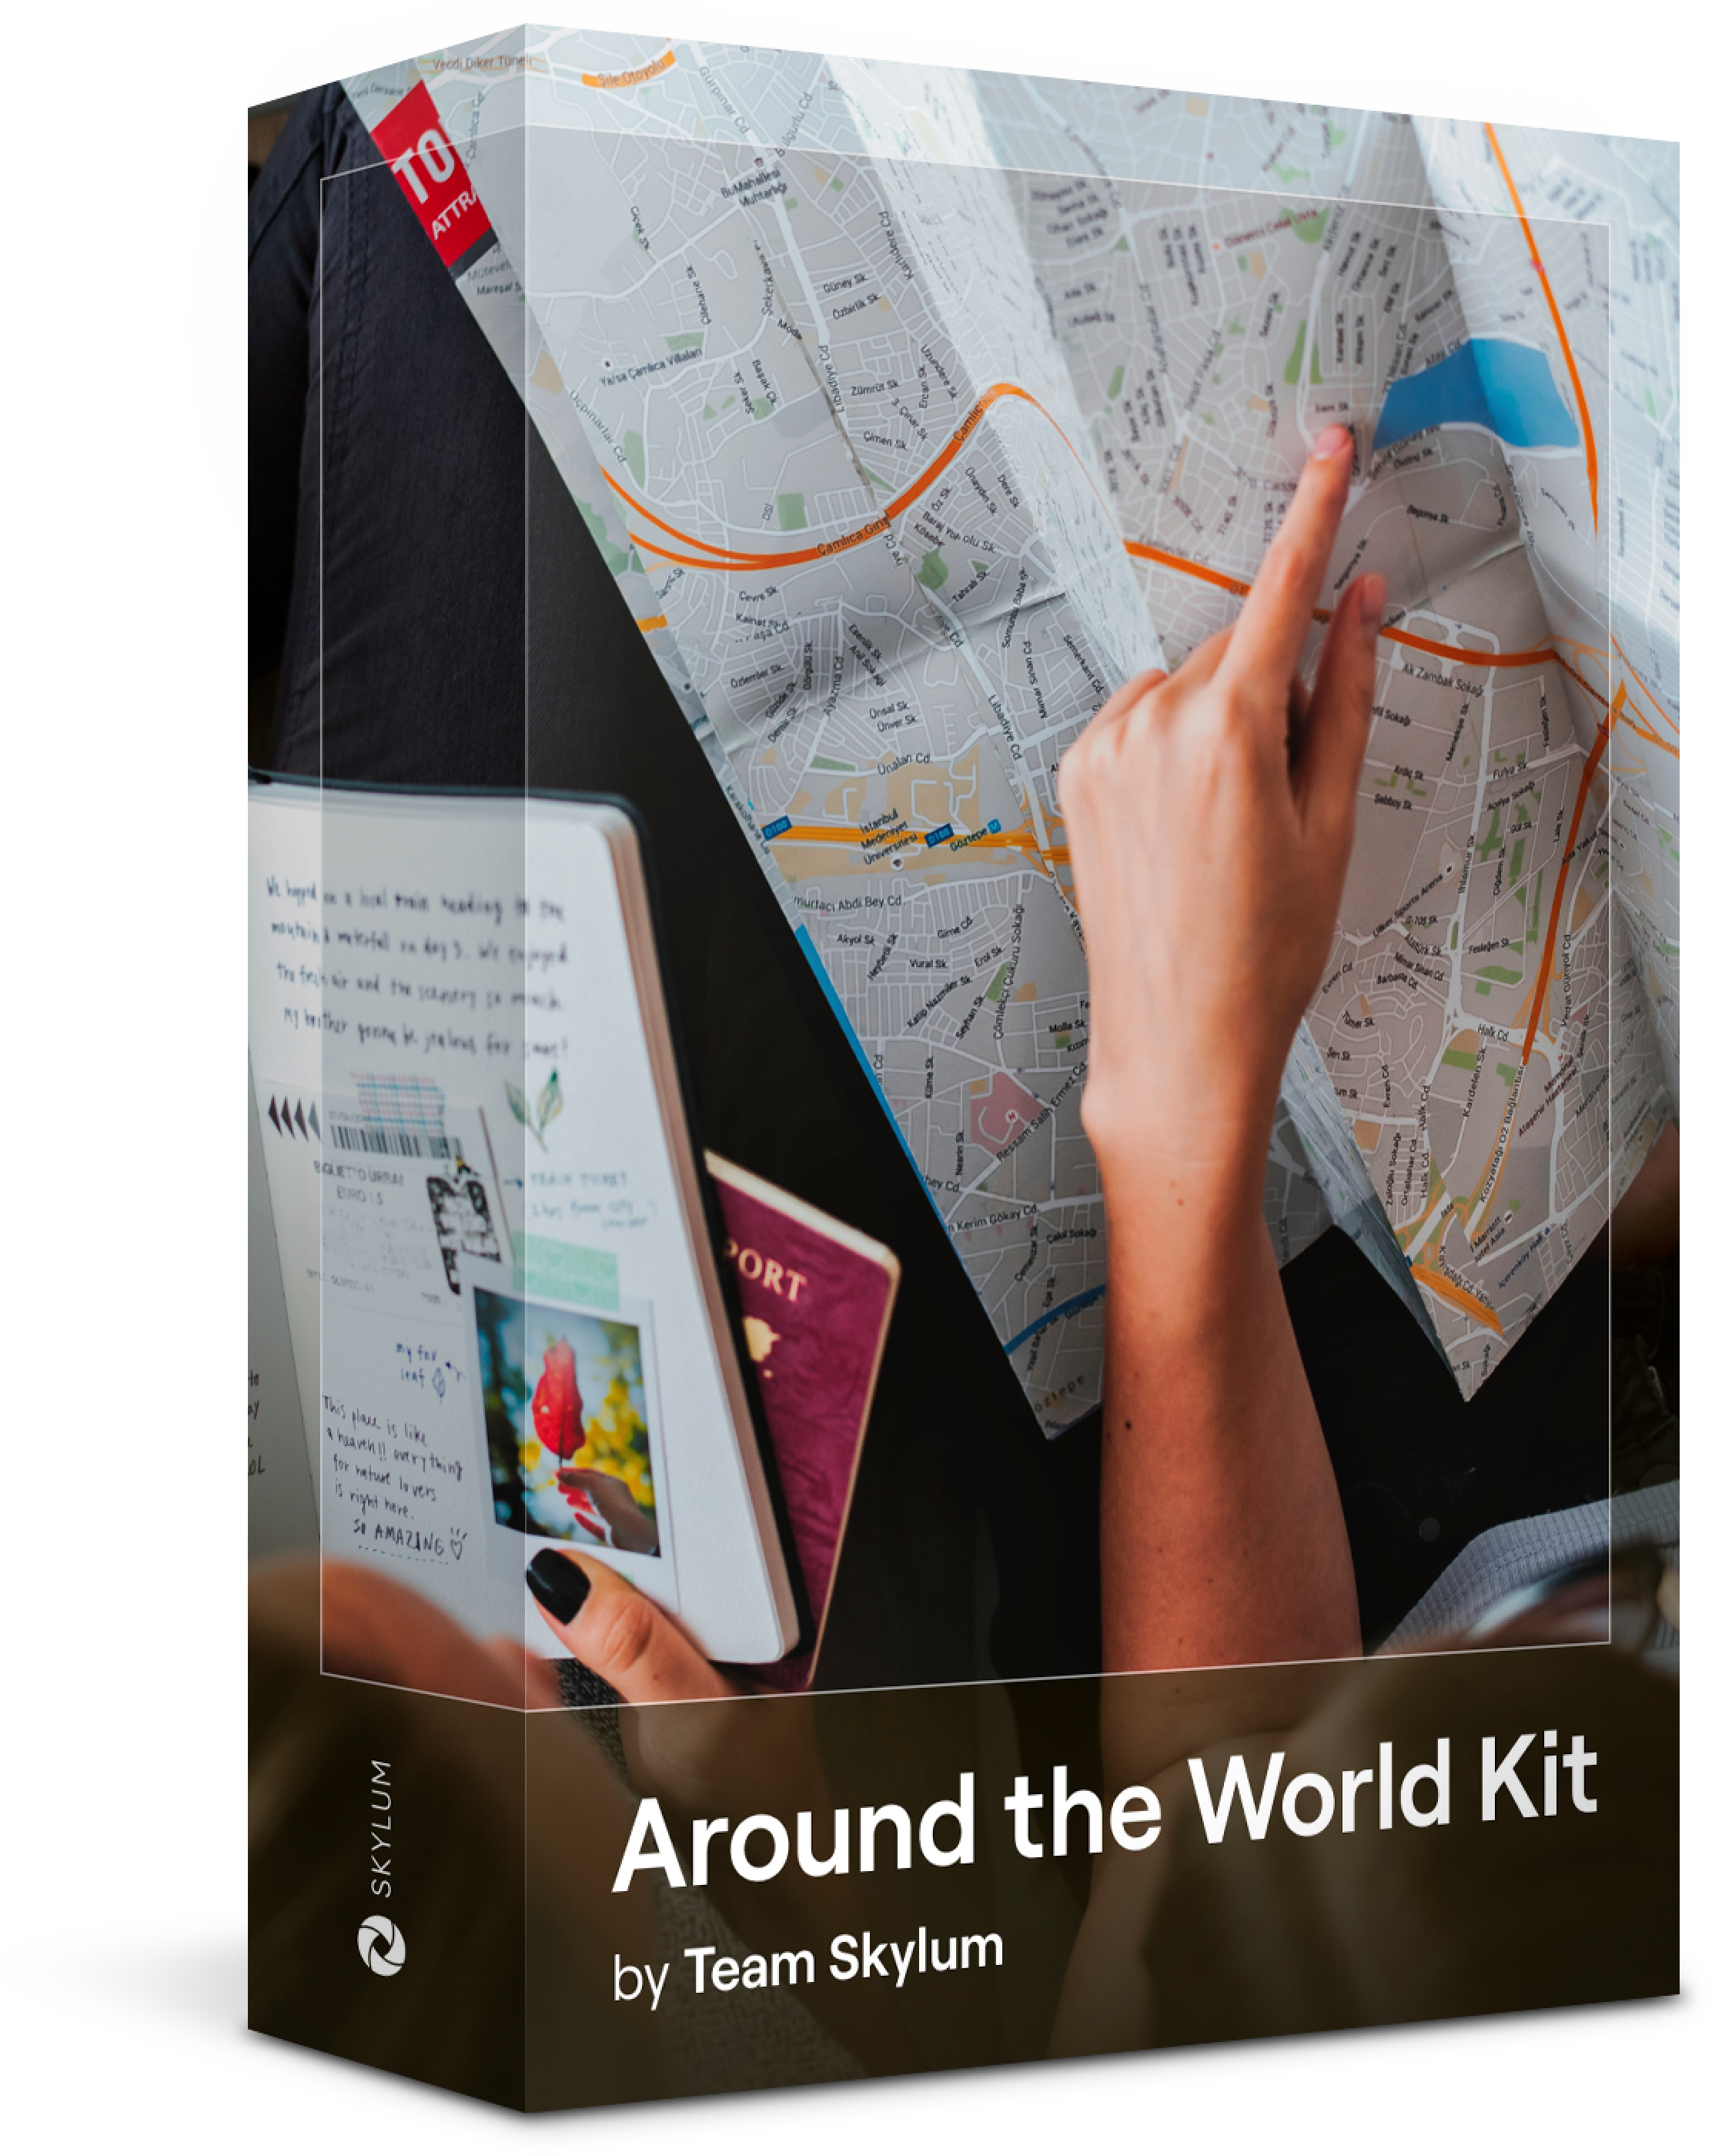 Around the World Kit by Team Skylum